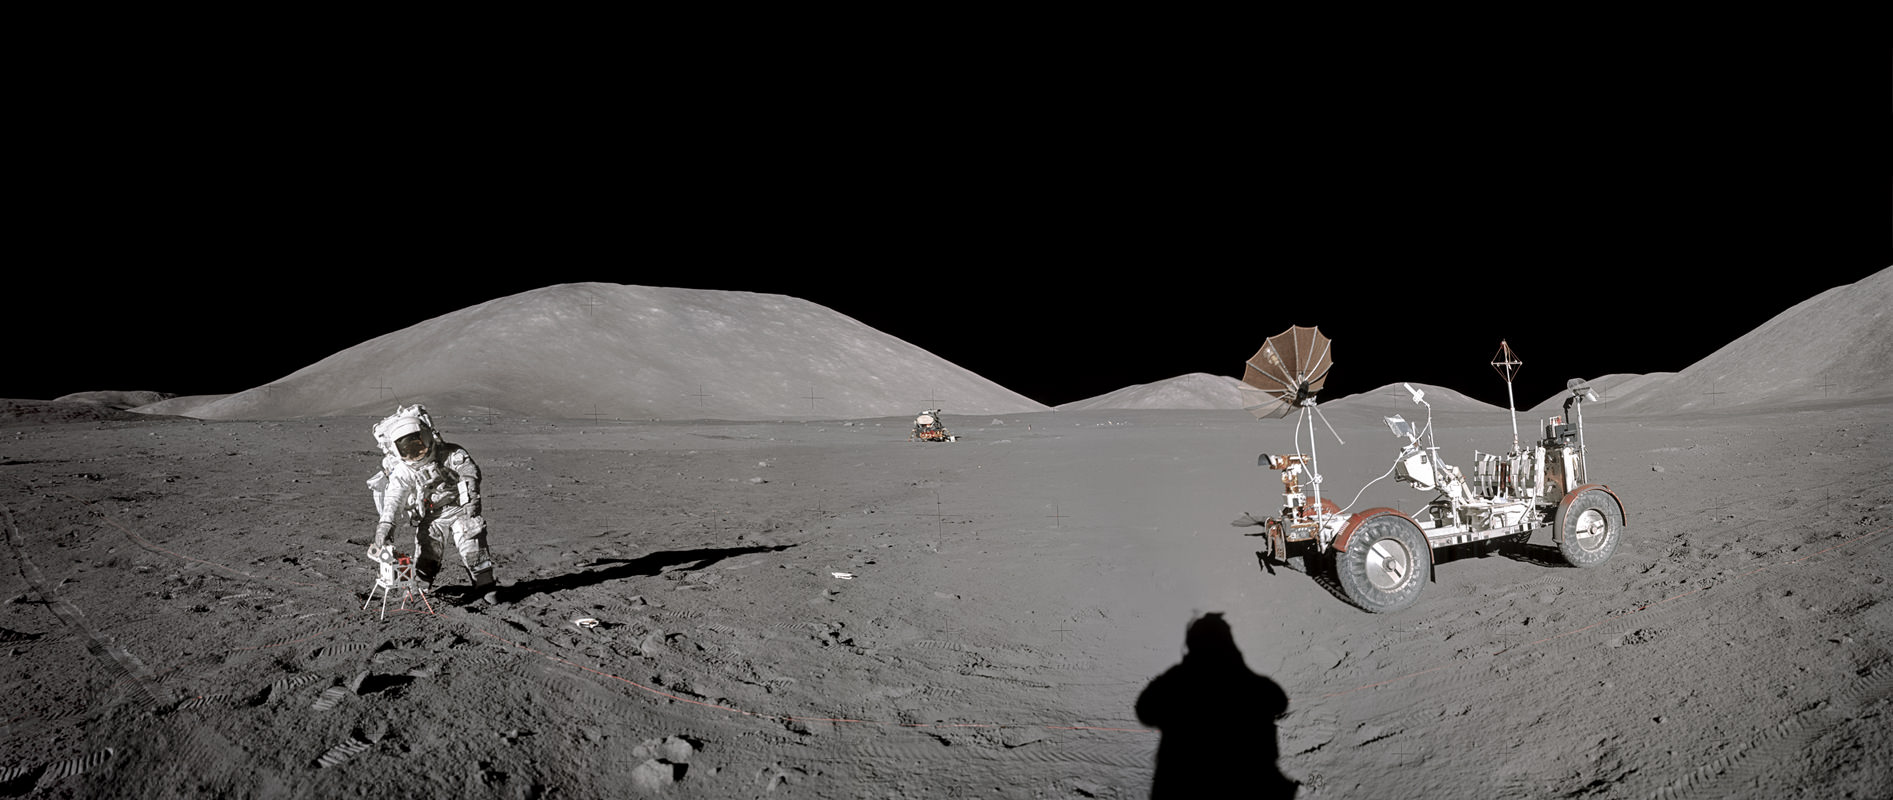 Eugene Cernan and Apollo 17